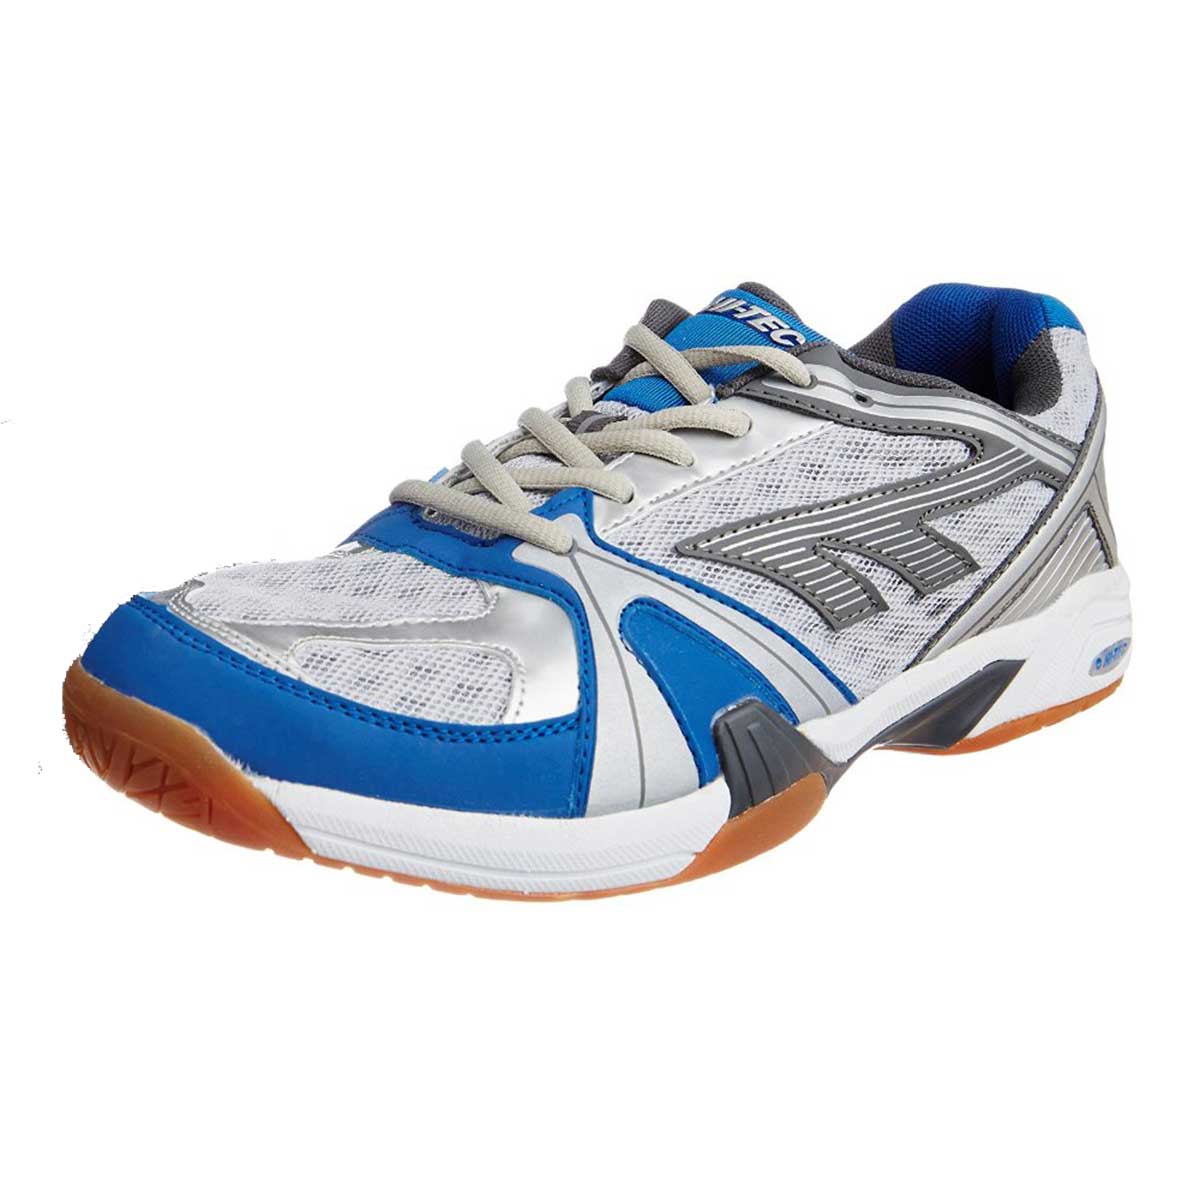 Buy Hi-Tec Indoor Lite Squash Shoes Online in India